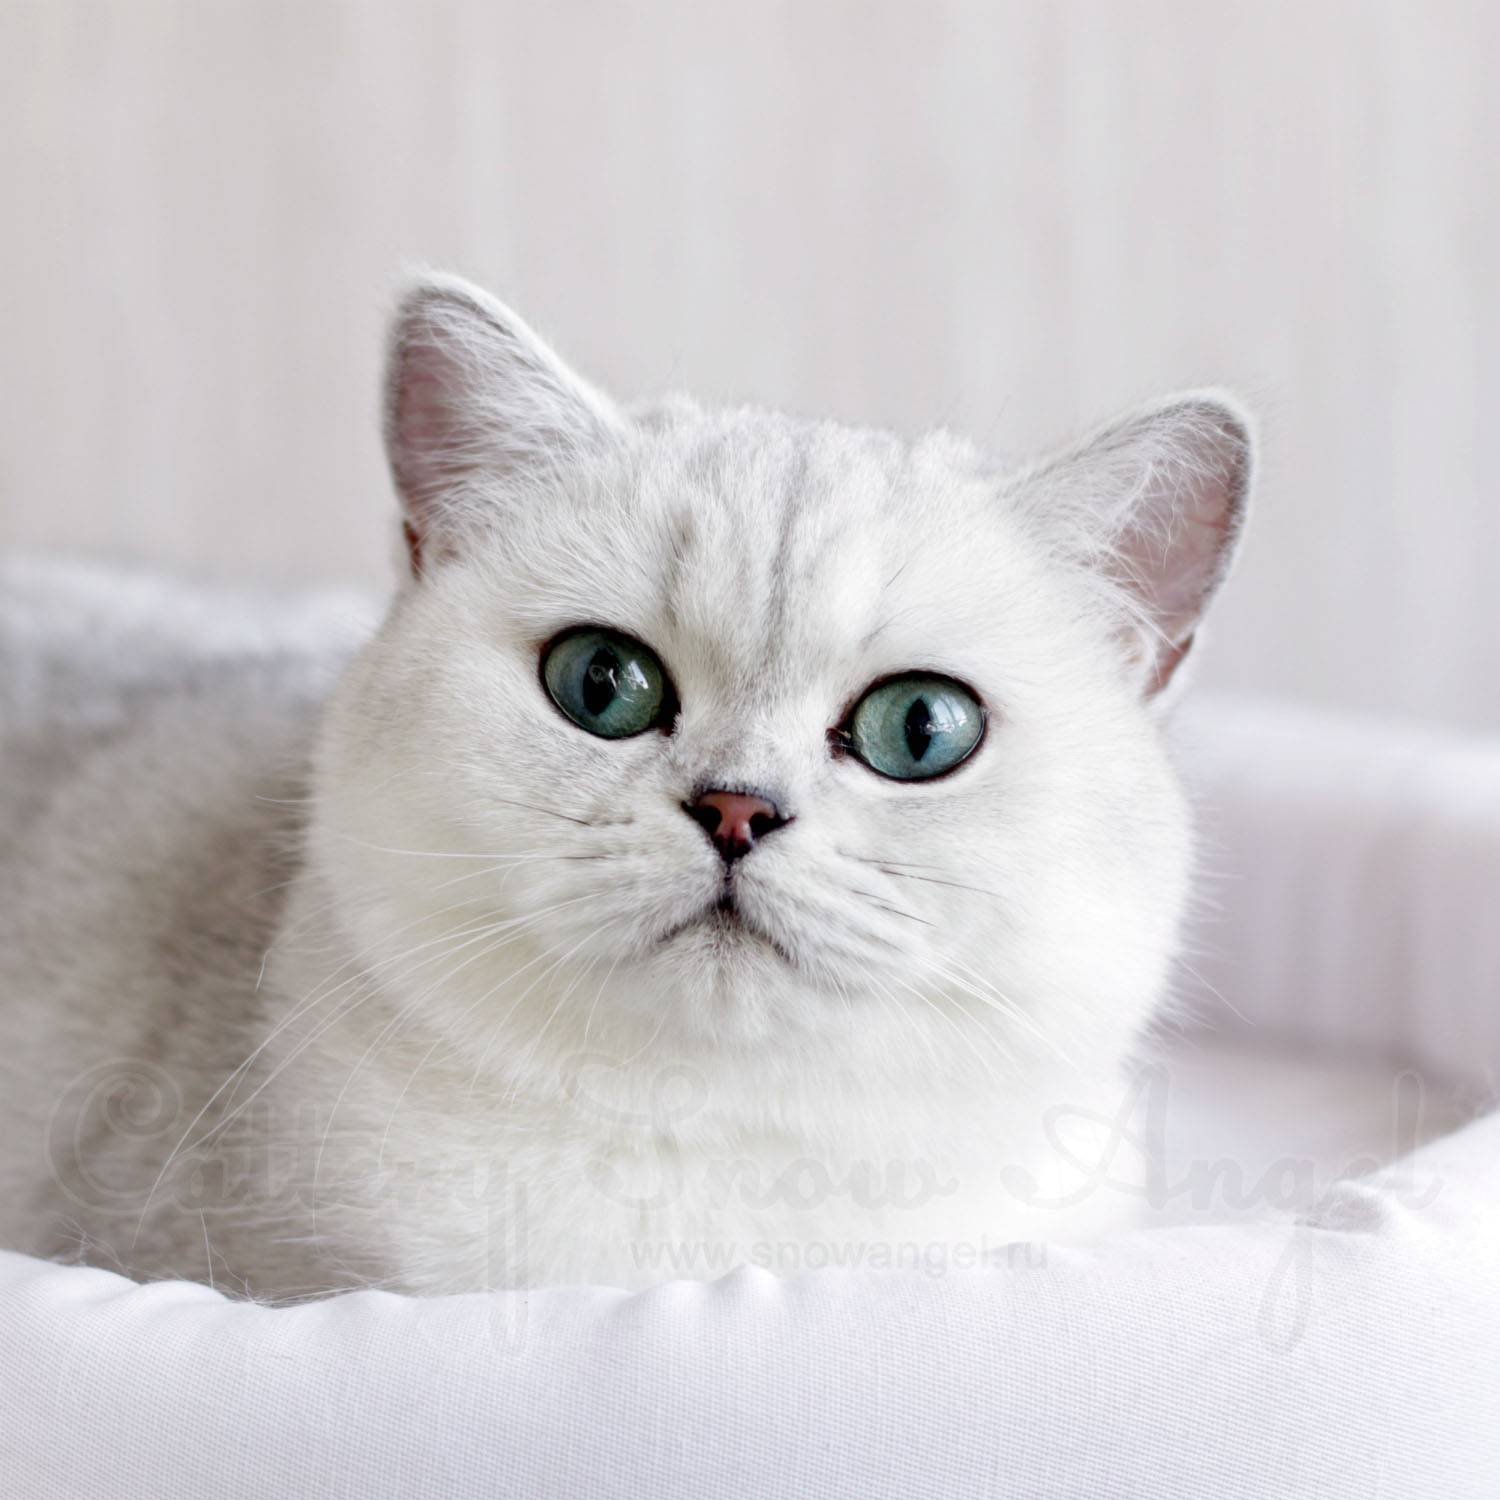 Шиншилла – это порода кошек или их окрас, может ли шиншилловый питомец быть британским или шотландским?